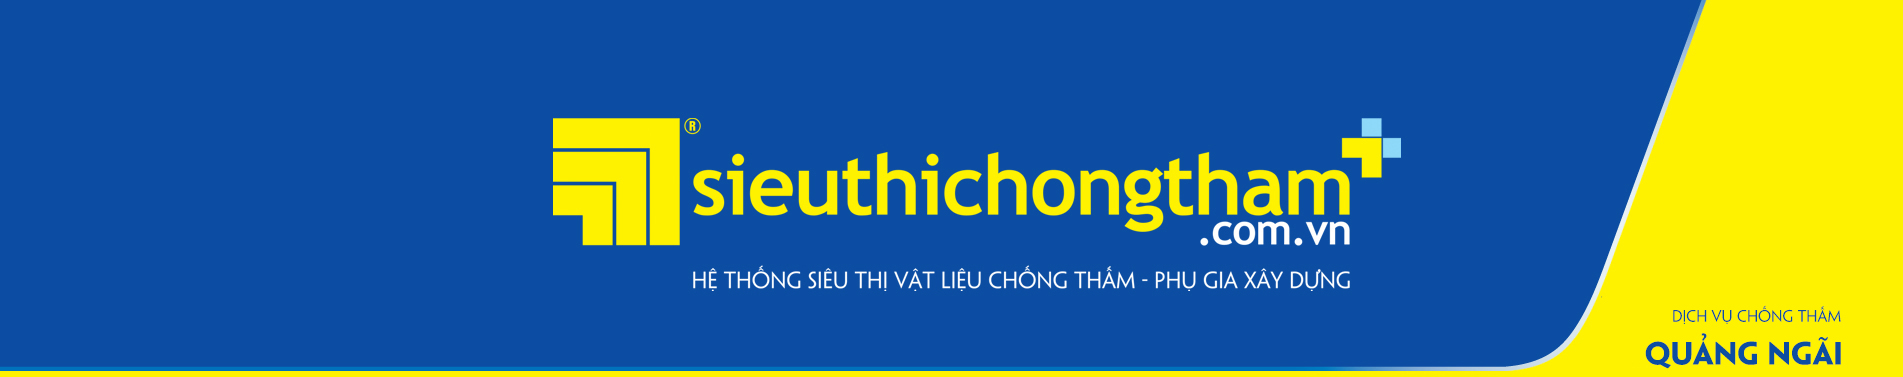 Dich Vu Chong Tham Quang Ngai 1